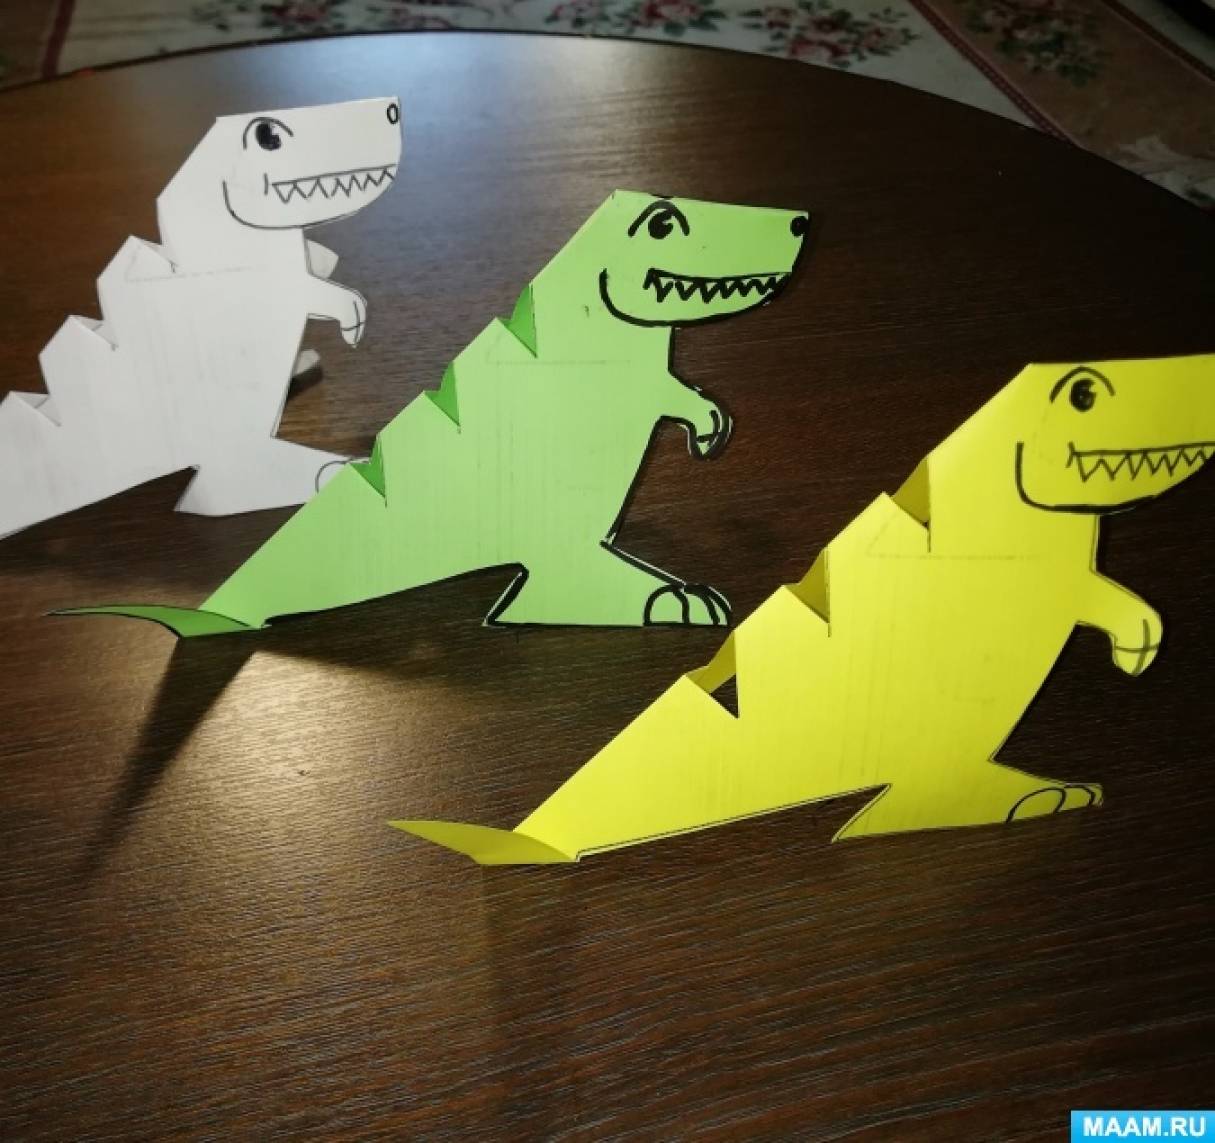 Игрушки динозавры - купить в СПб, интерактивные фигурки и наборы, интернет-магазин 